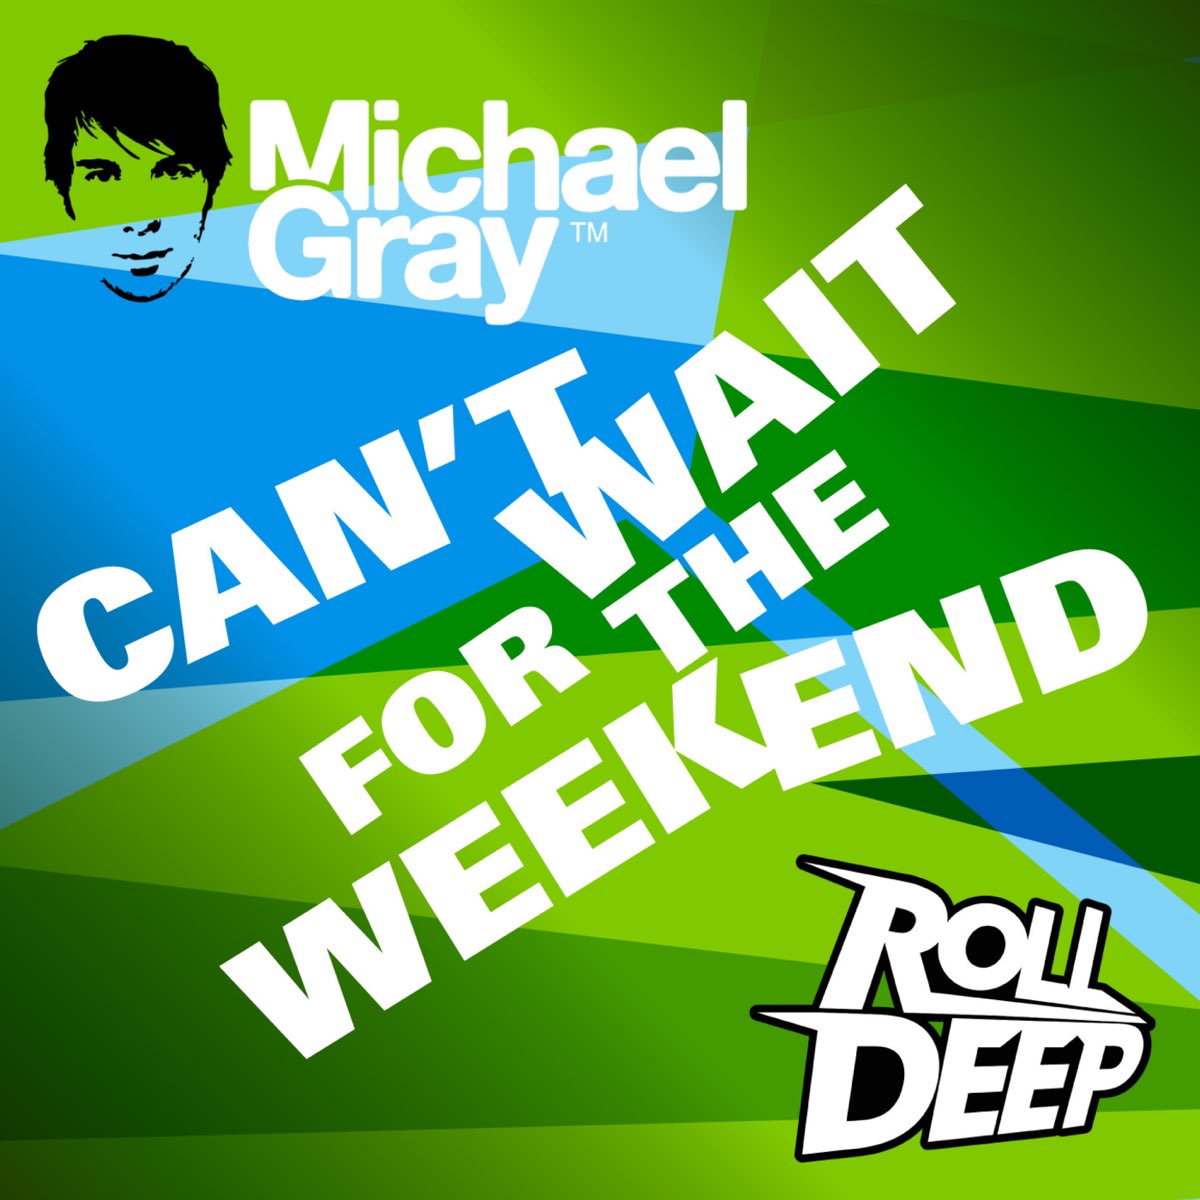 The weekend Radio Edit Michael Gray. Weekend. The weekend Radio Edit. H weekend